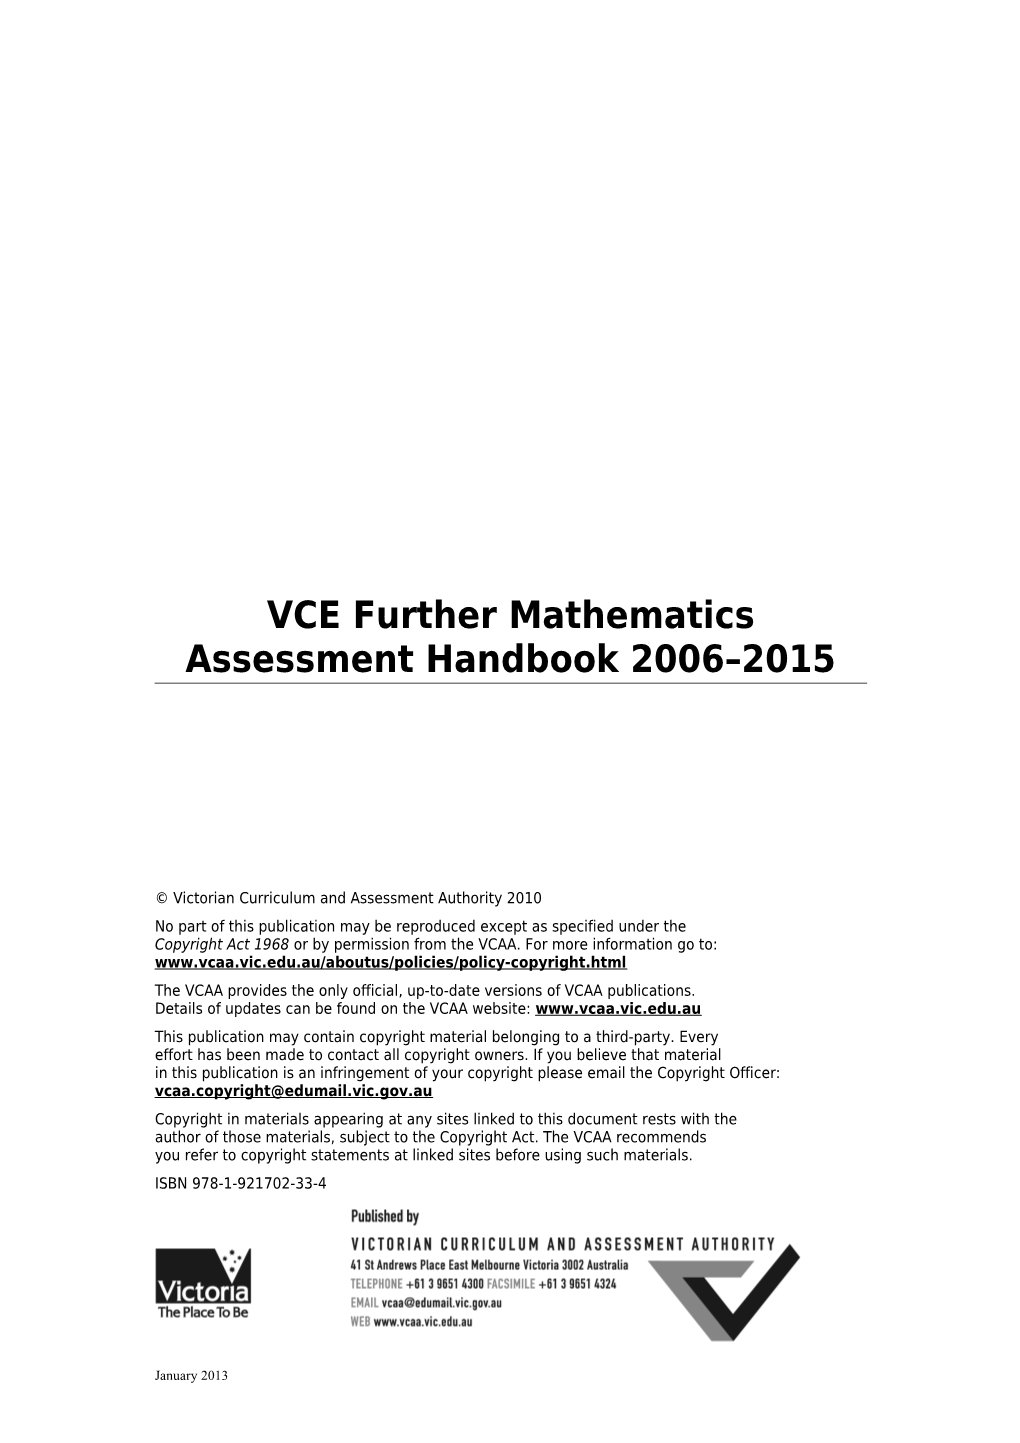 VCE Further Mathematics Assessment Handbook 2006-2014